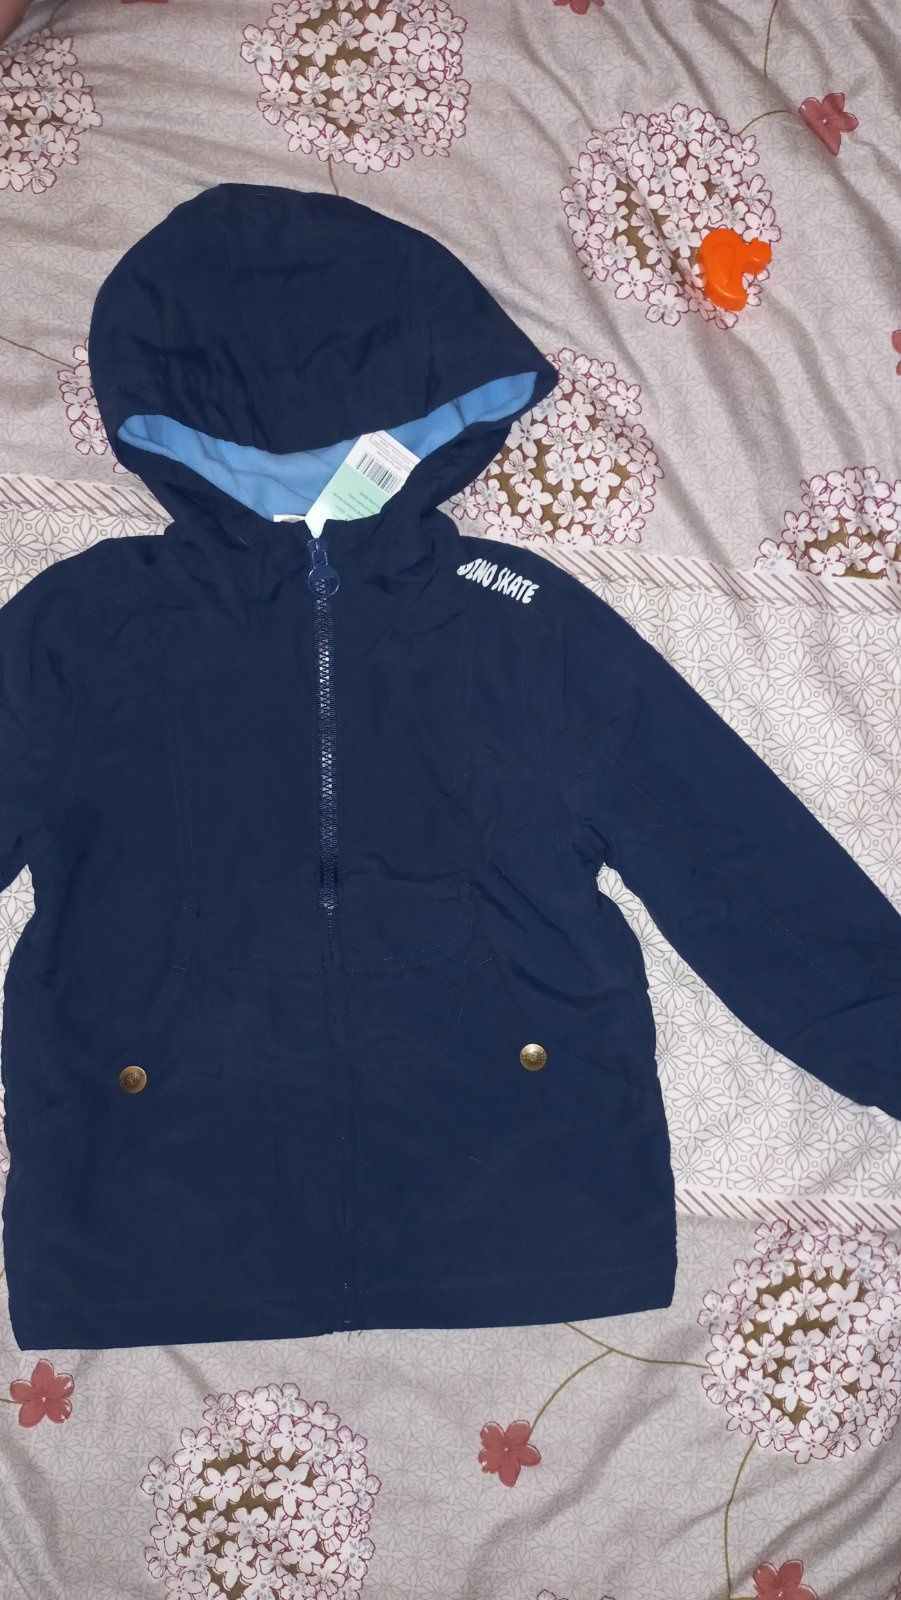 Курточки демисезонные/куртка зимняя/ветровочки на мальчика 1-2 годика